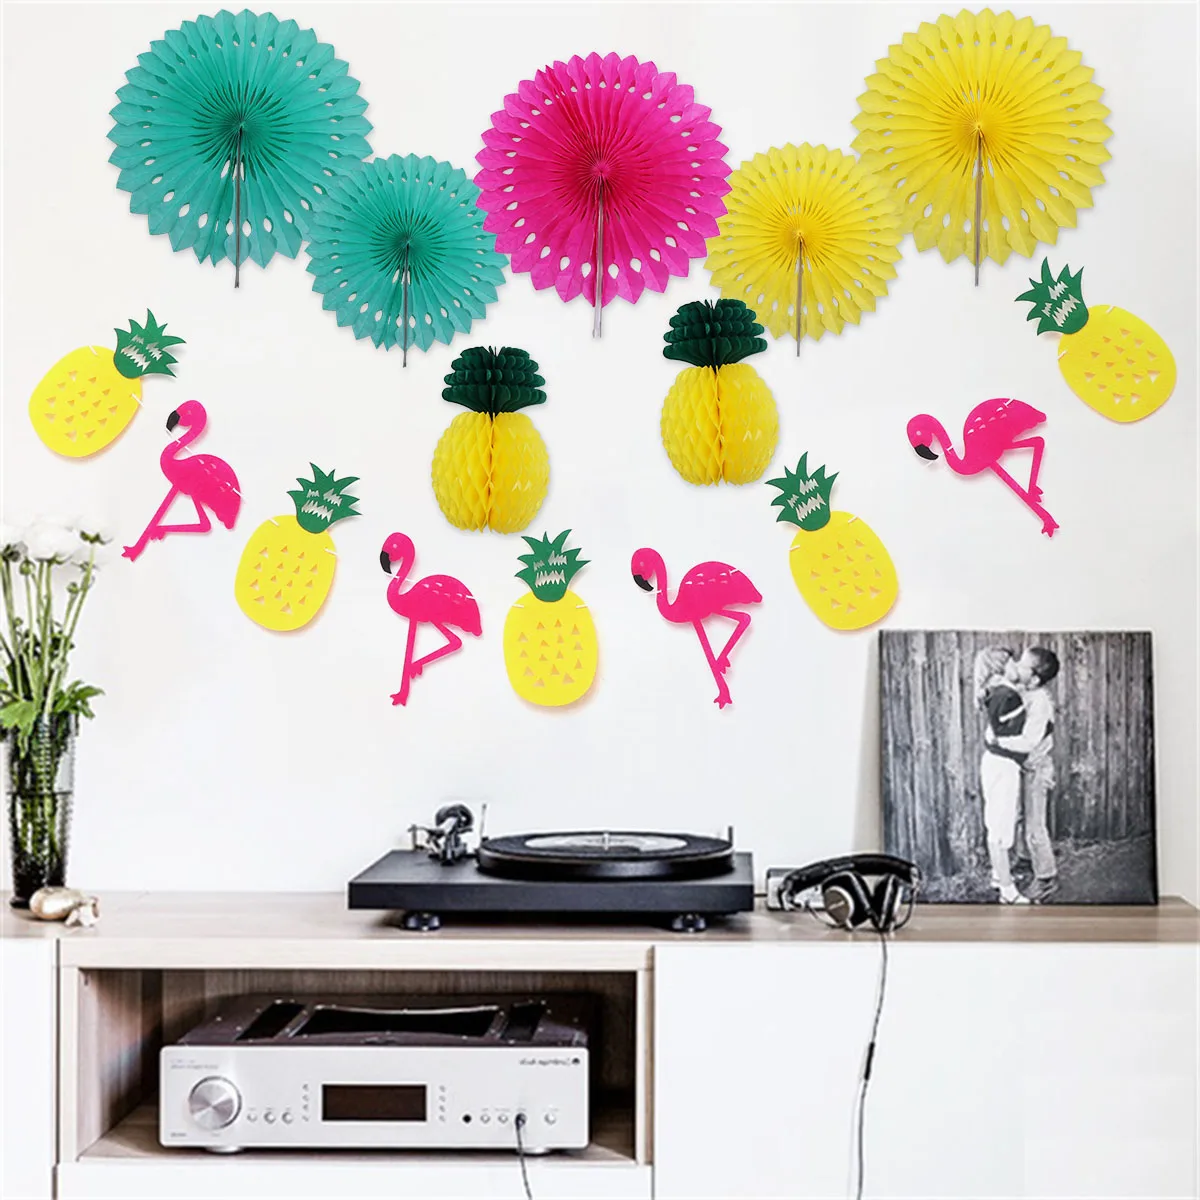 Ананасовый шар соты бумажный Веерообразный Цветок Декоративная гирлянда Фламинго Бантинг Баннер Гавайская тропическая подарки для